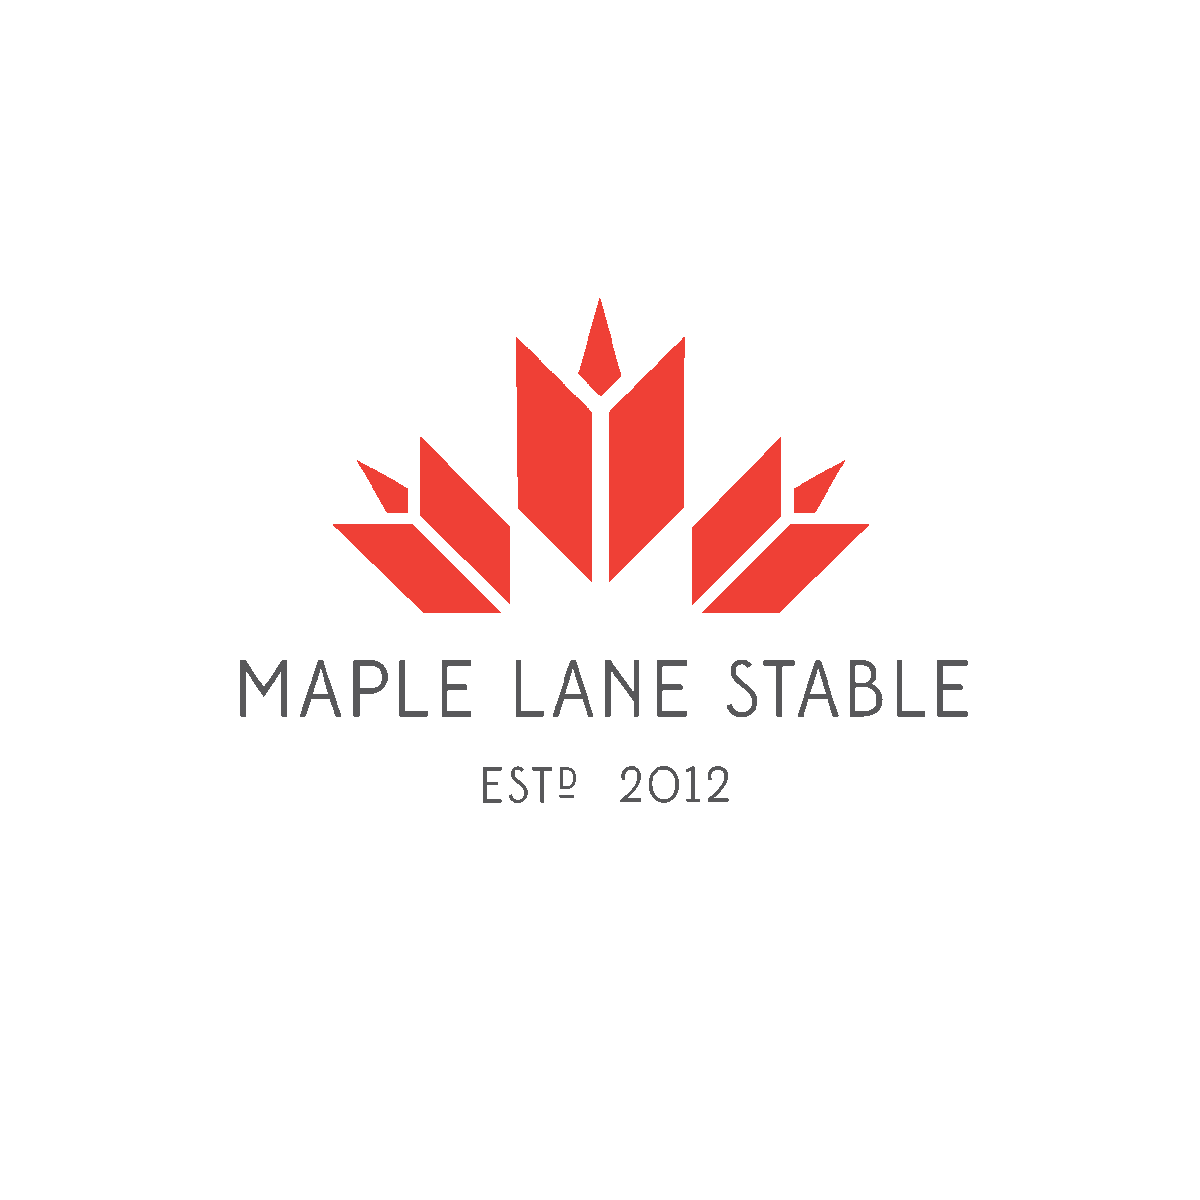 equestrian maple stable Canada Maple Leaf  Canadian horse farm logo identity